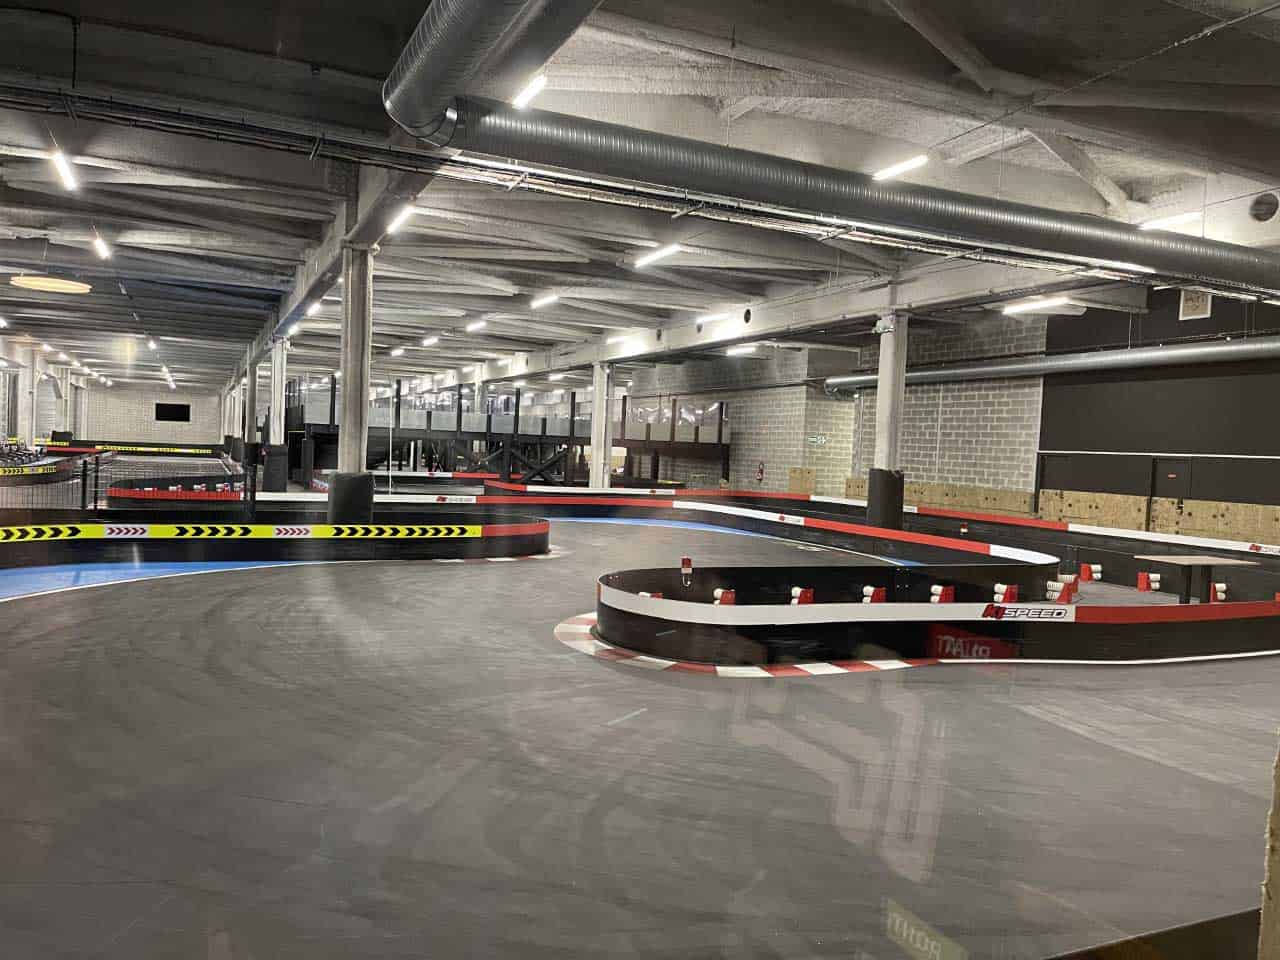 K1 Speed Indoor Go Kart Racing Now Open In Caen France K1 Speed K1 Speed 